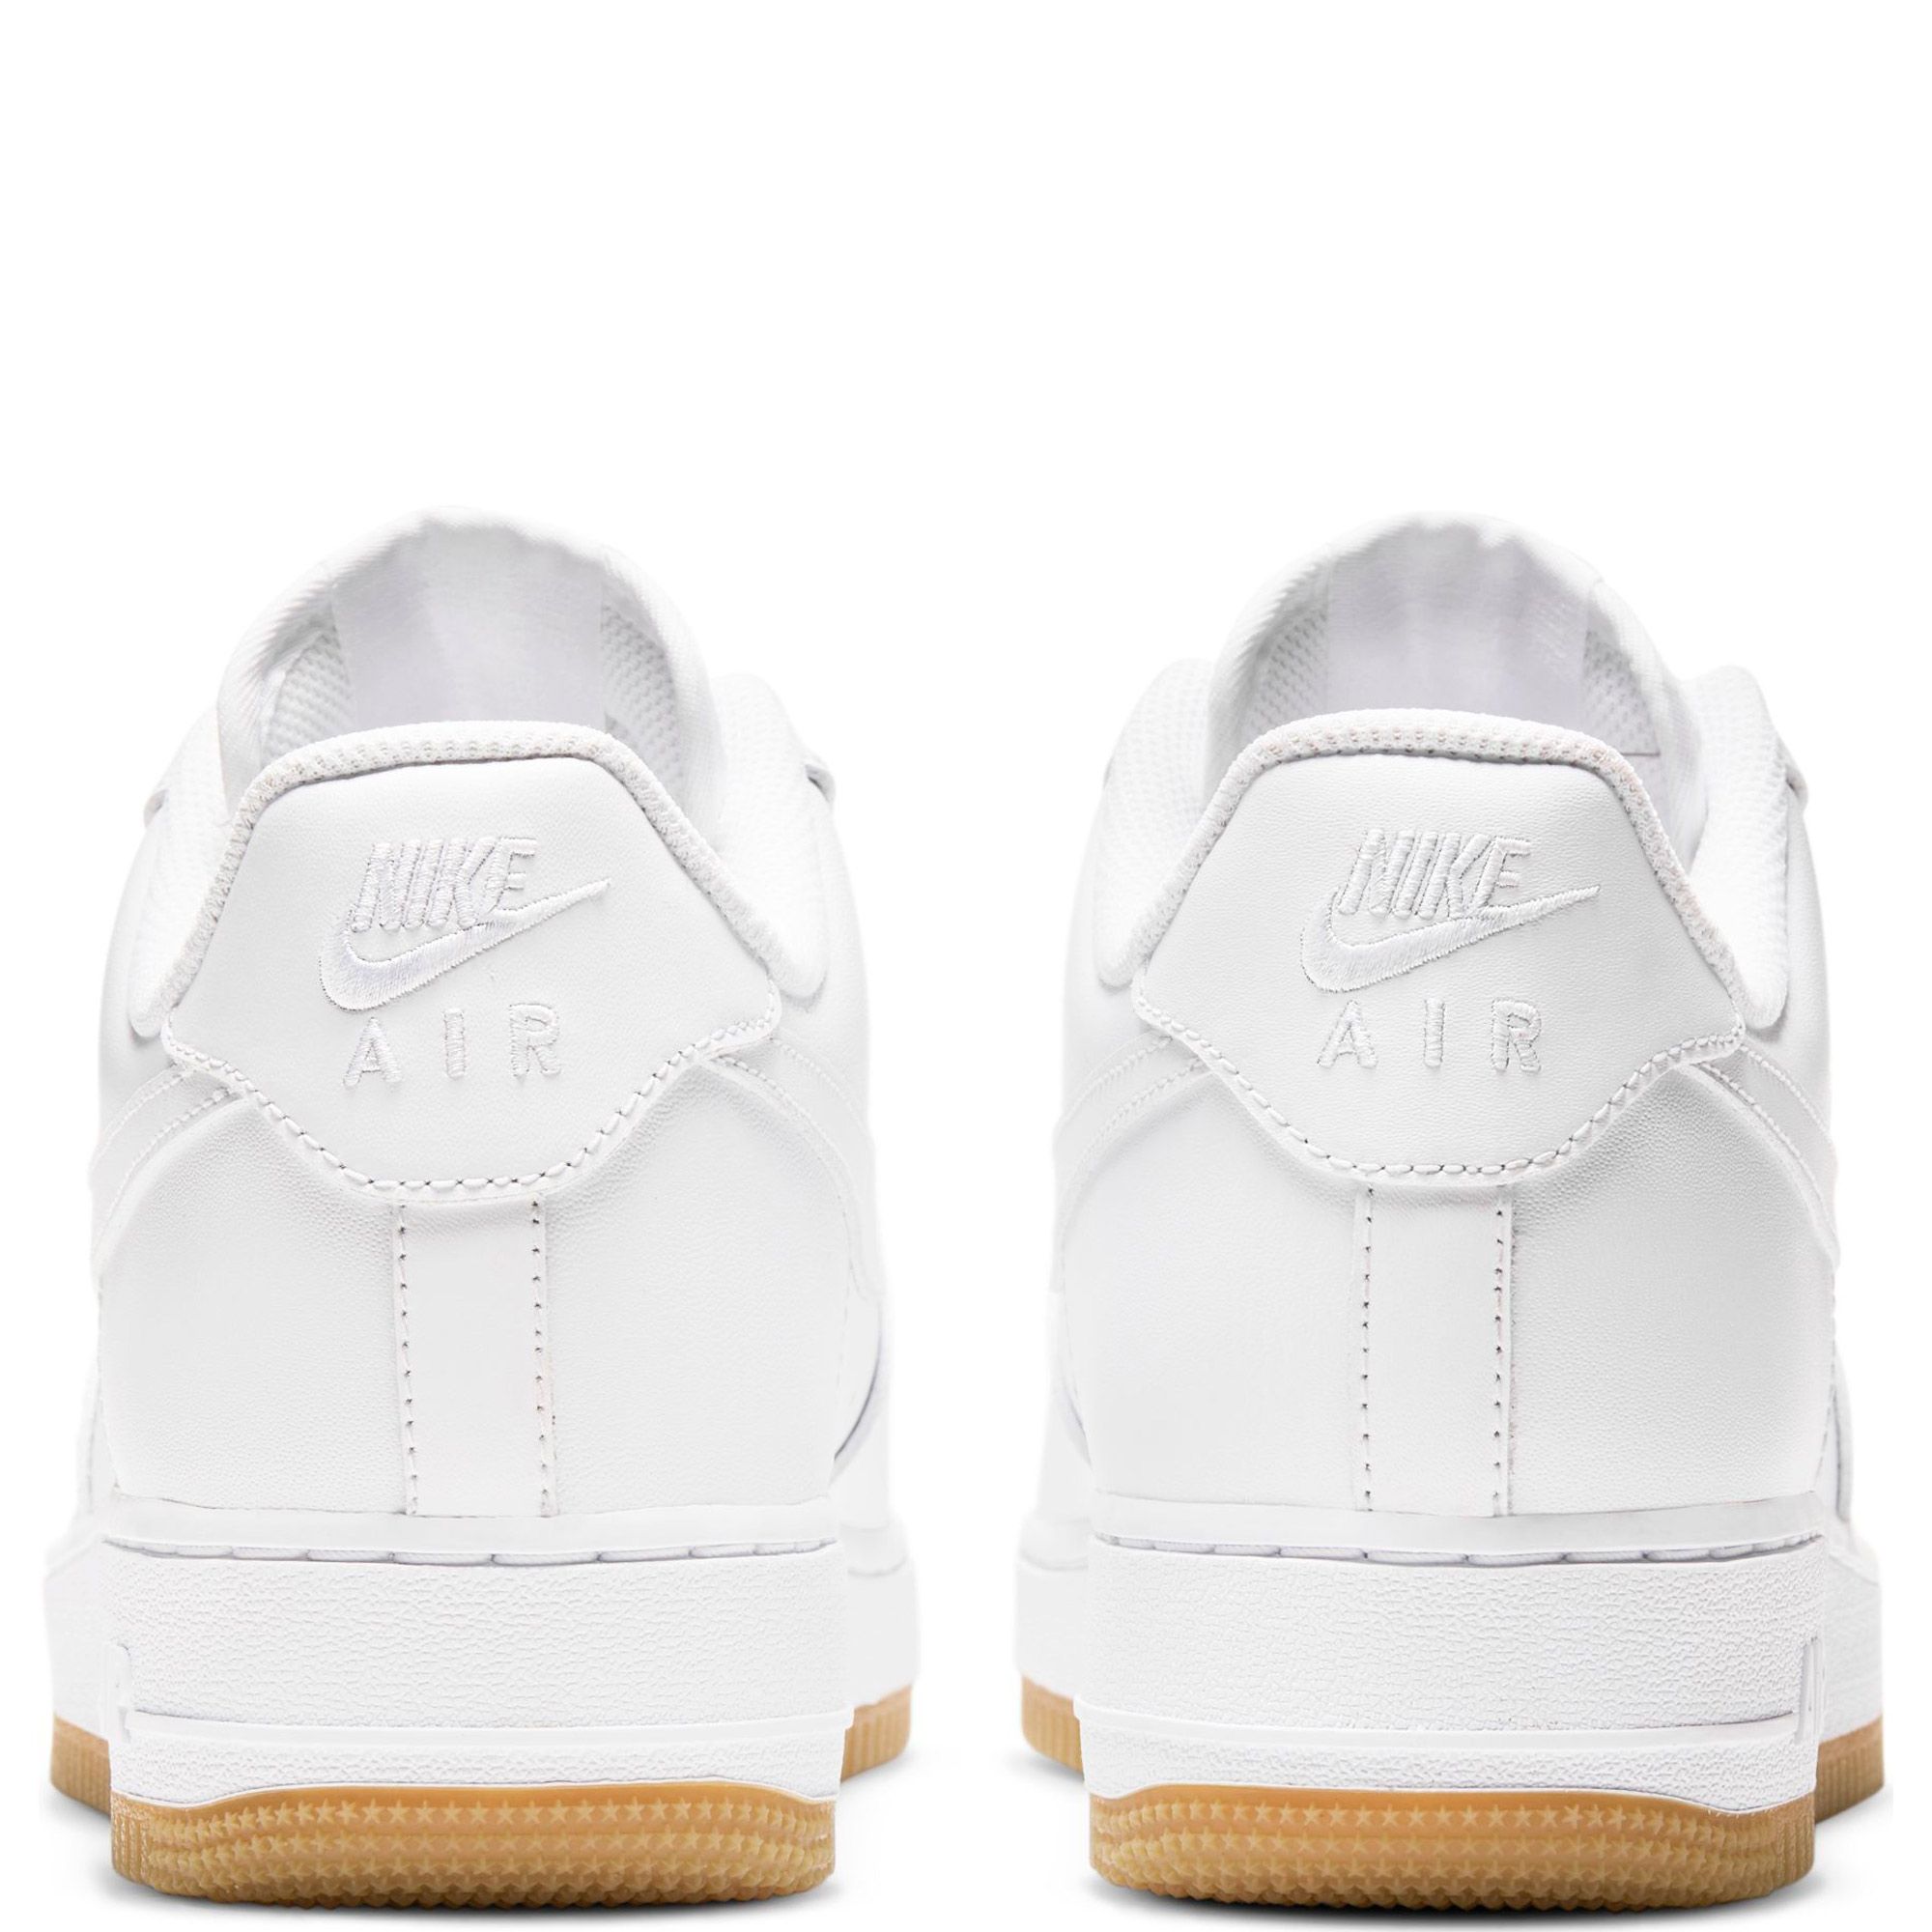 Nike Air Force 1 '07 White / Gum Light Brown - White